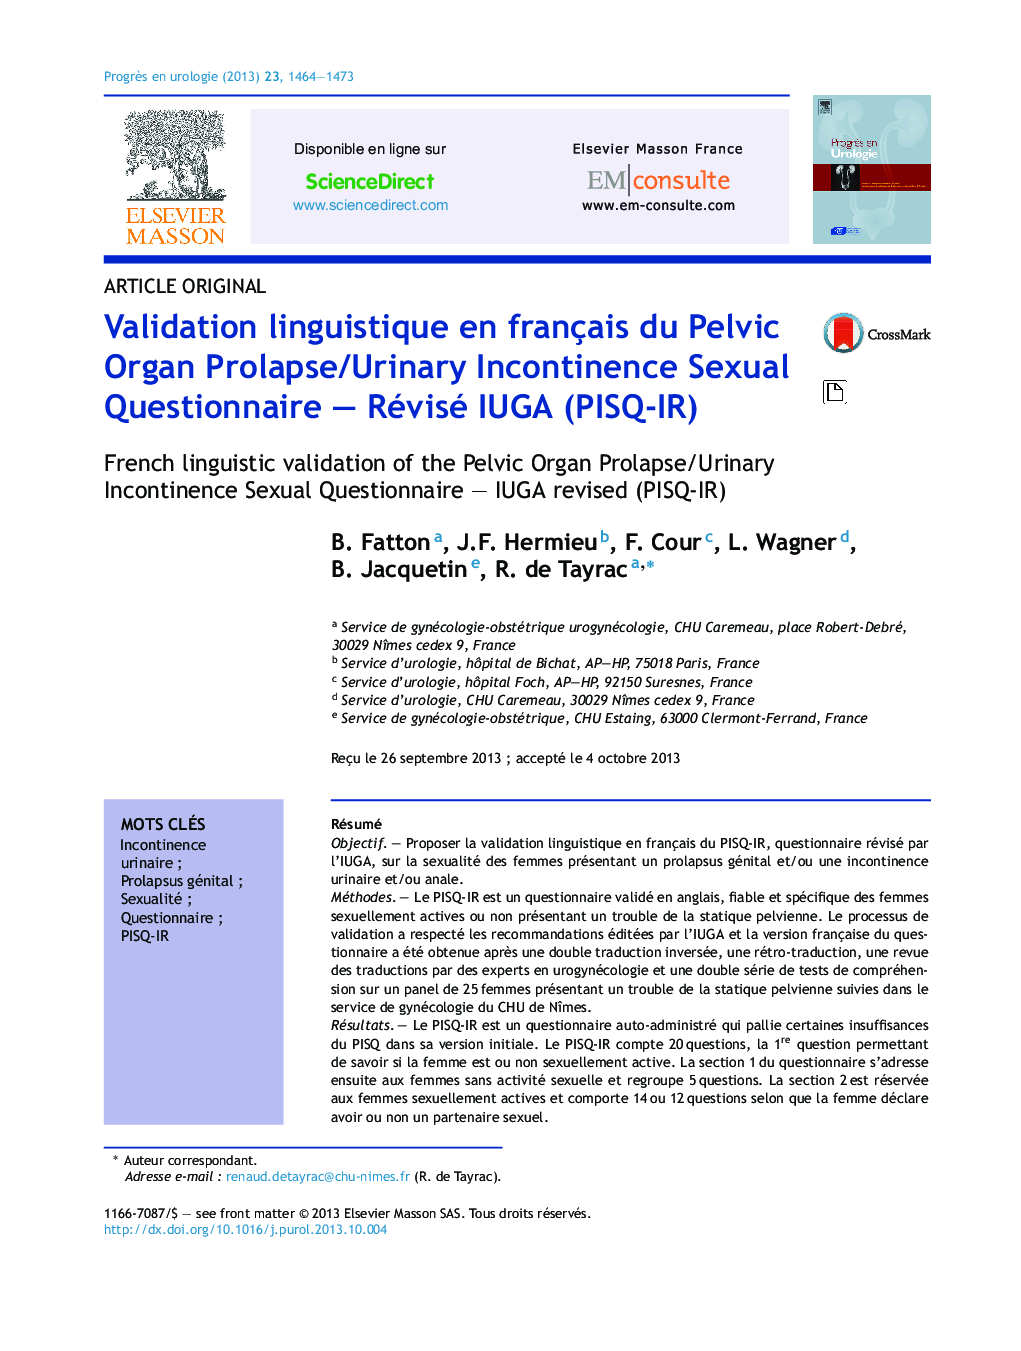 Validation linguistique en français du Pelvic Organ Prolapse/Urinary Incontinence Sexual Questionnaire - Révisé IUGA (PISQ-IR)